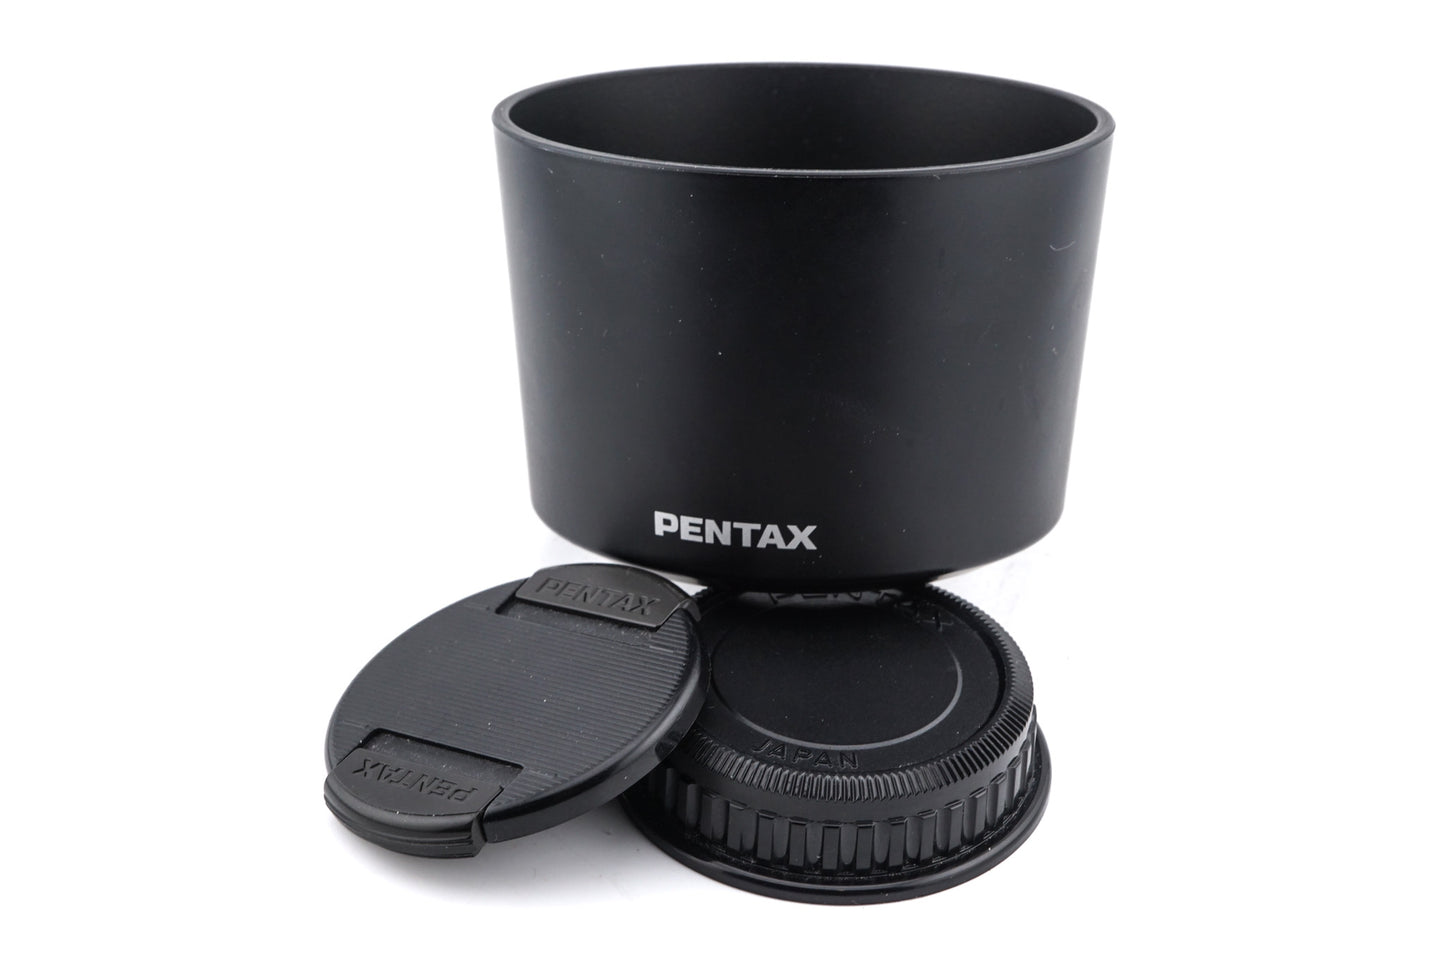 Pentax 100mm f2.8 SMC Pentax-D FA Macro